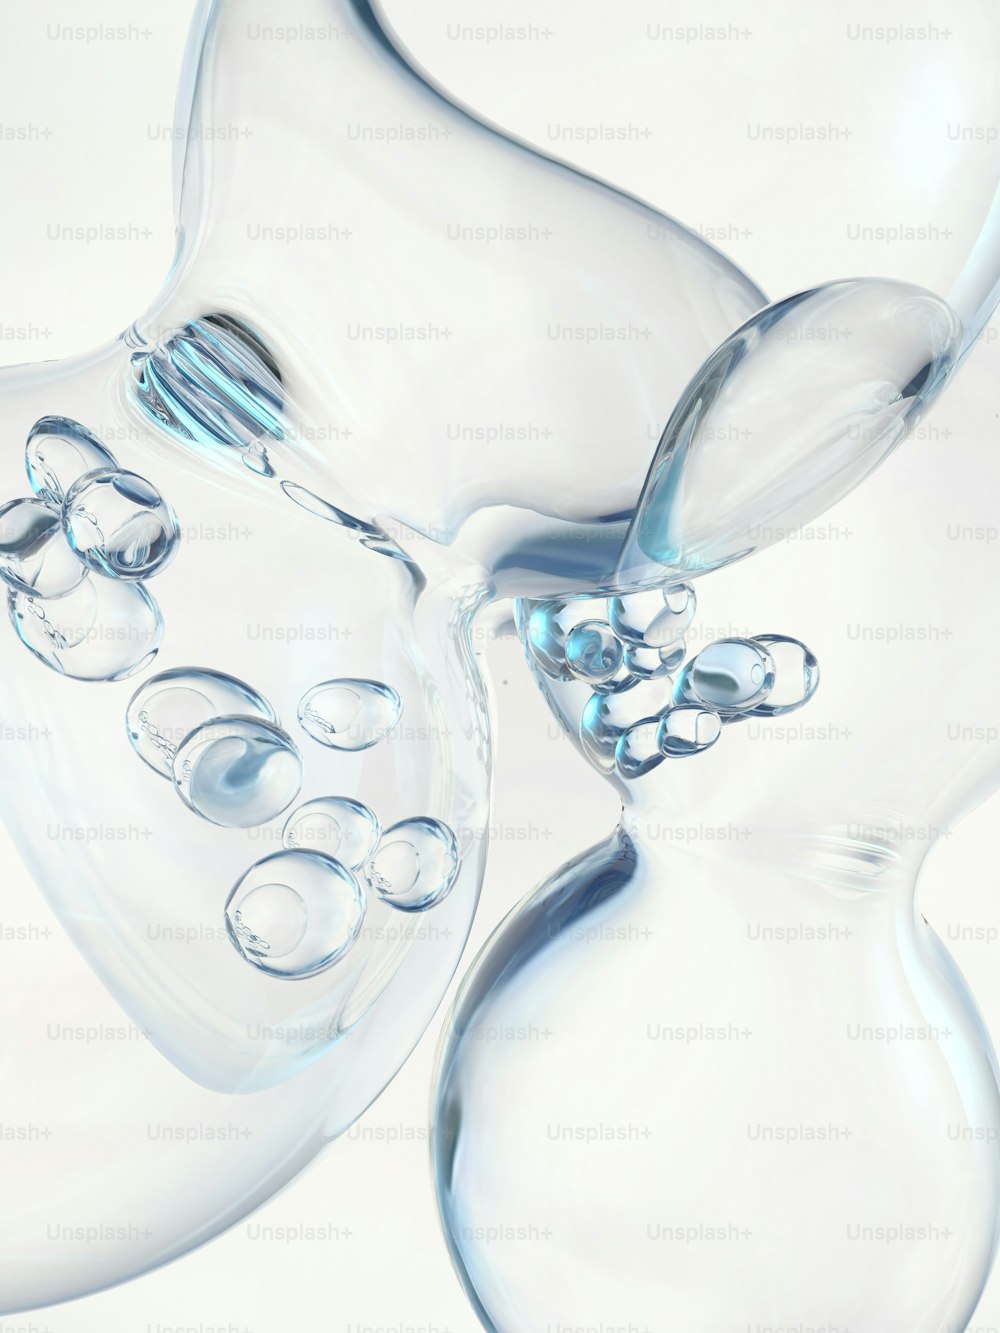 Un primer plano de un jarrón de vidrio con burbujas